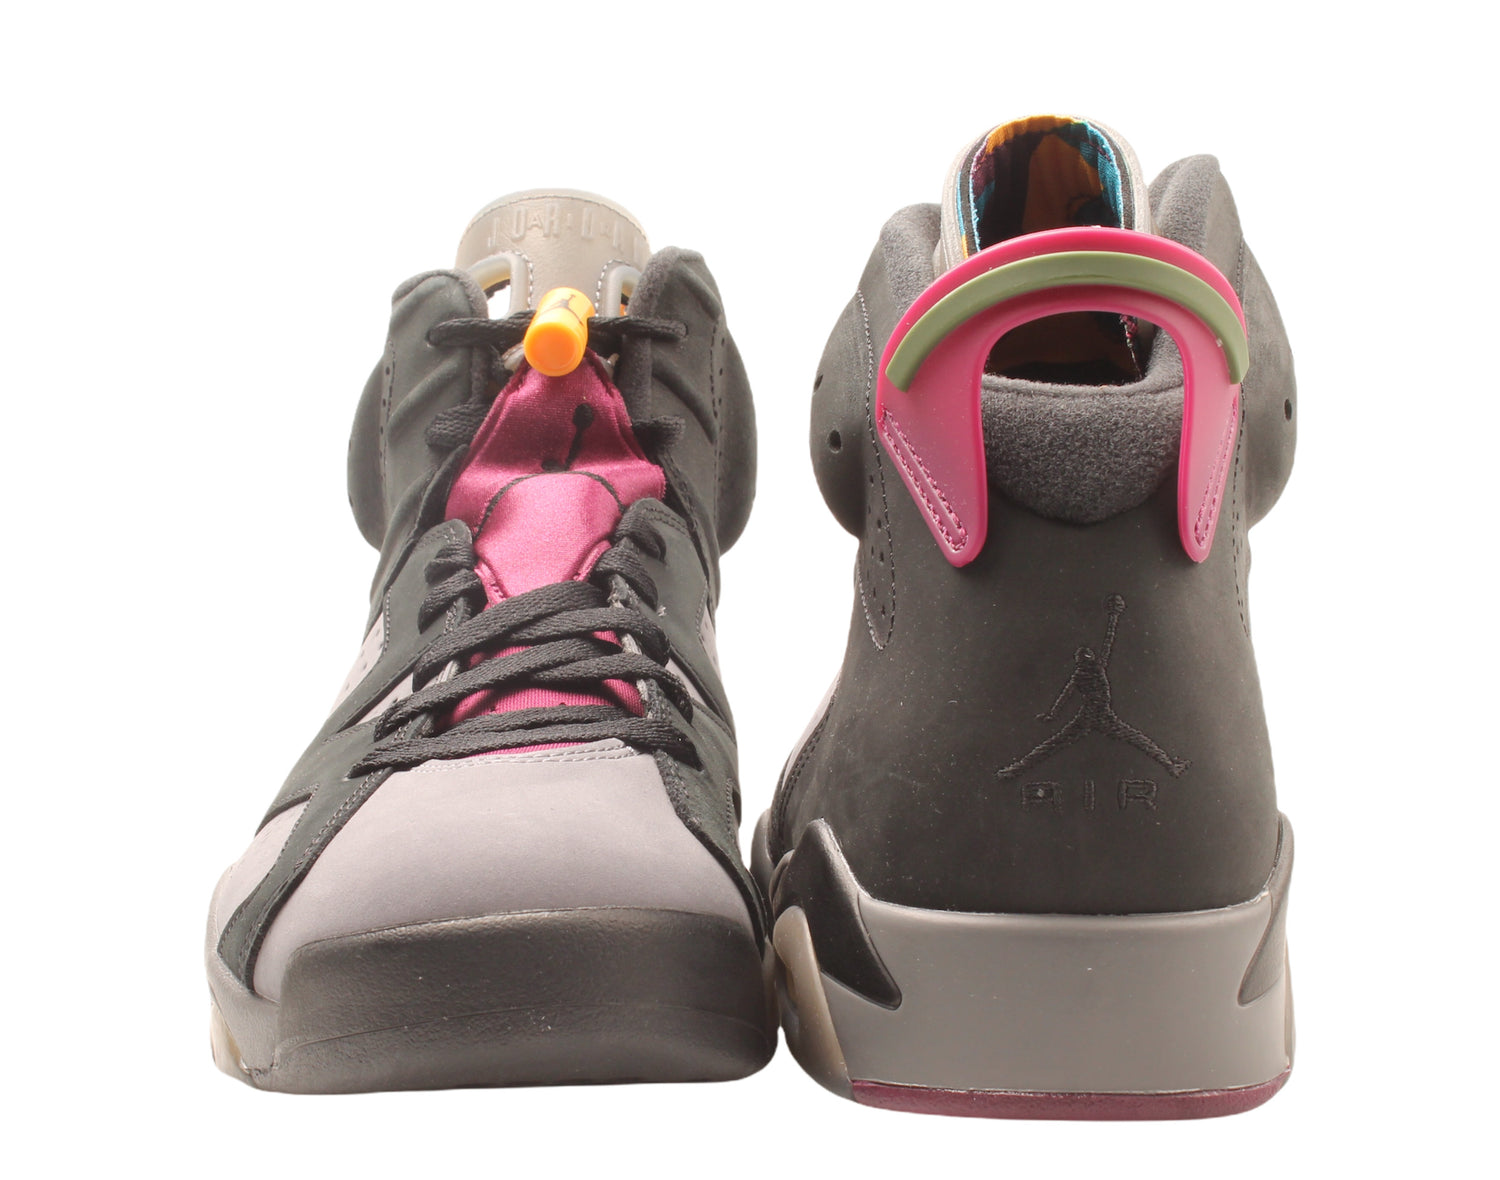 Nike Air Jordan 6 Retro Men's Basketball Shoes